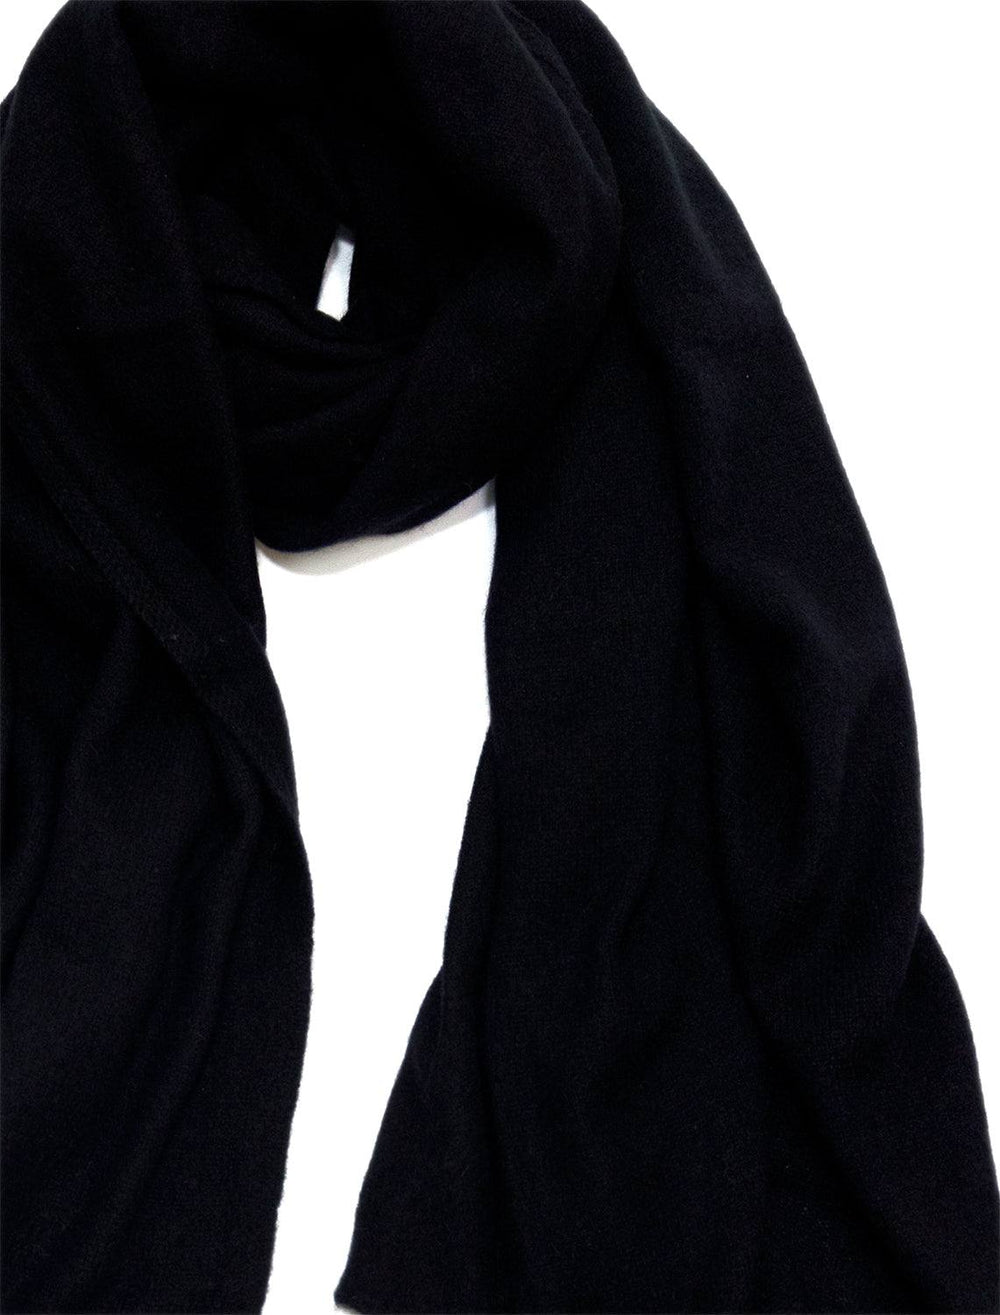 White + Warren's cashmere scarf in black.